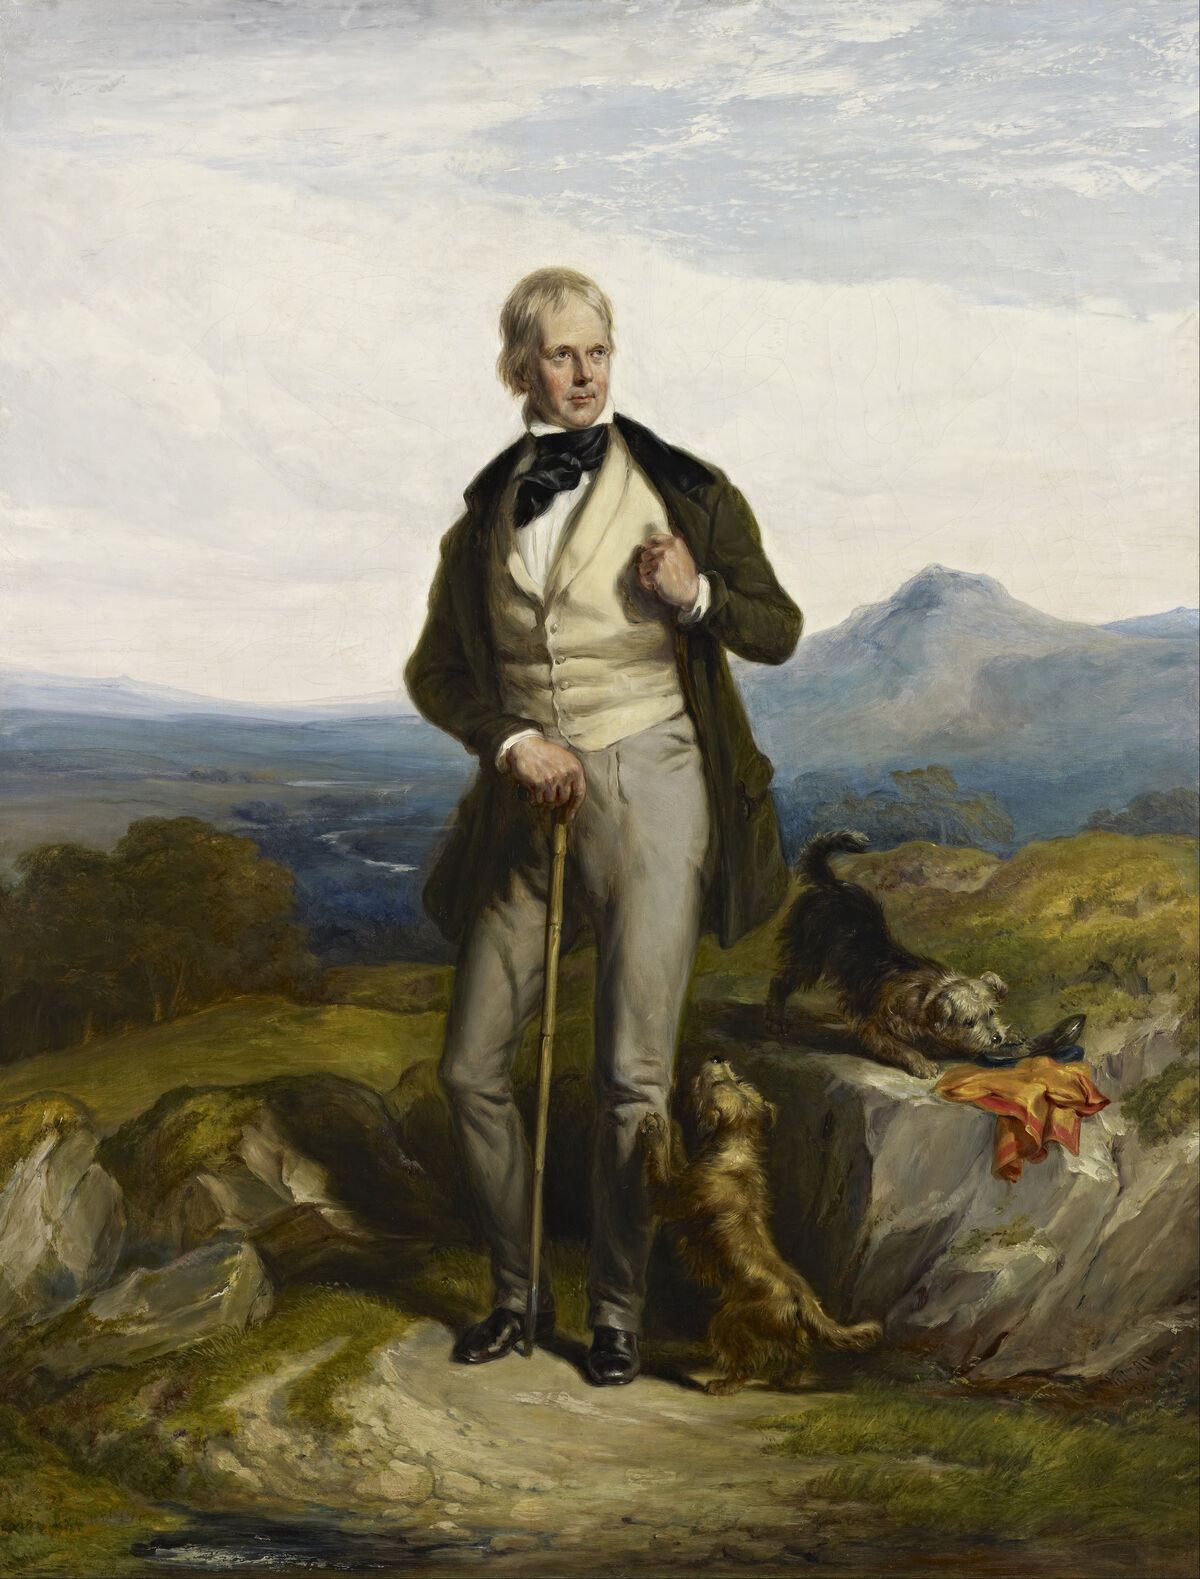 GFD 1/144: Sir Walter Scott (Gemälde von Sir William Allan, um 1844)